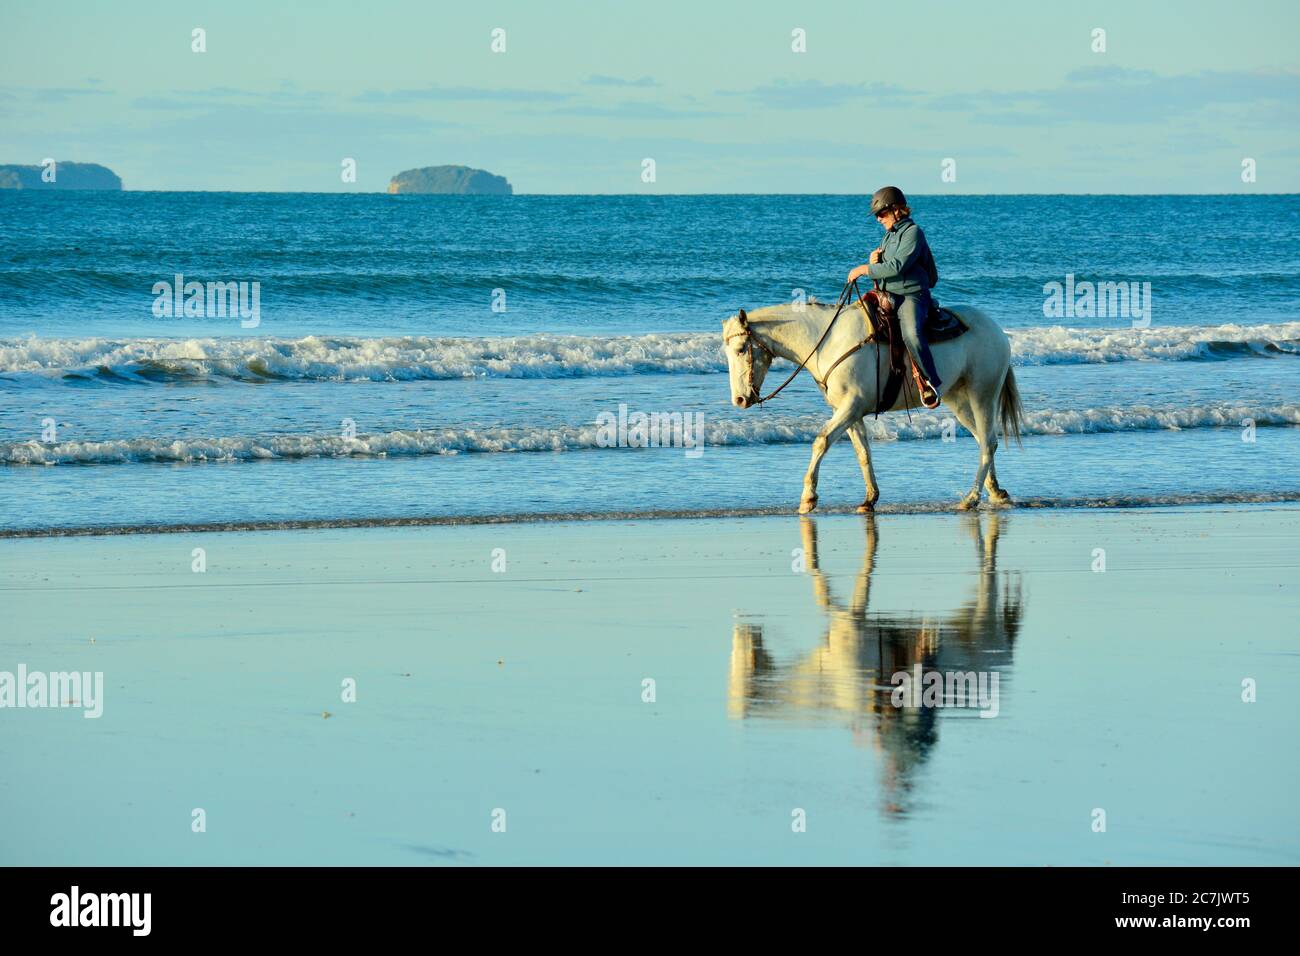 Papamoa Beach, Papamoa, New Zealand – July 07, 2019: an unidentified woman on a white horse at a seashore. Stock Photo